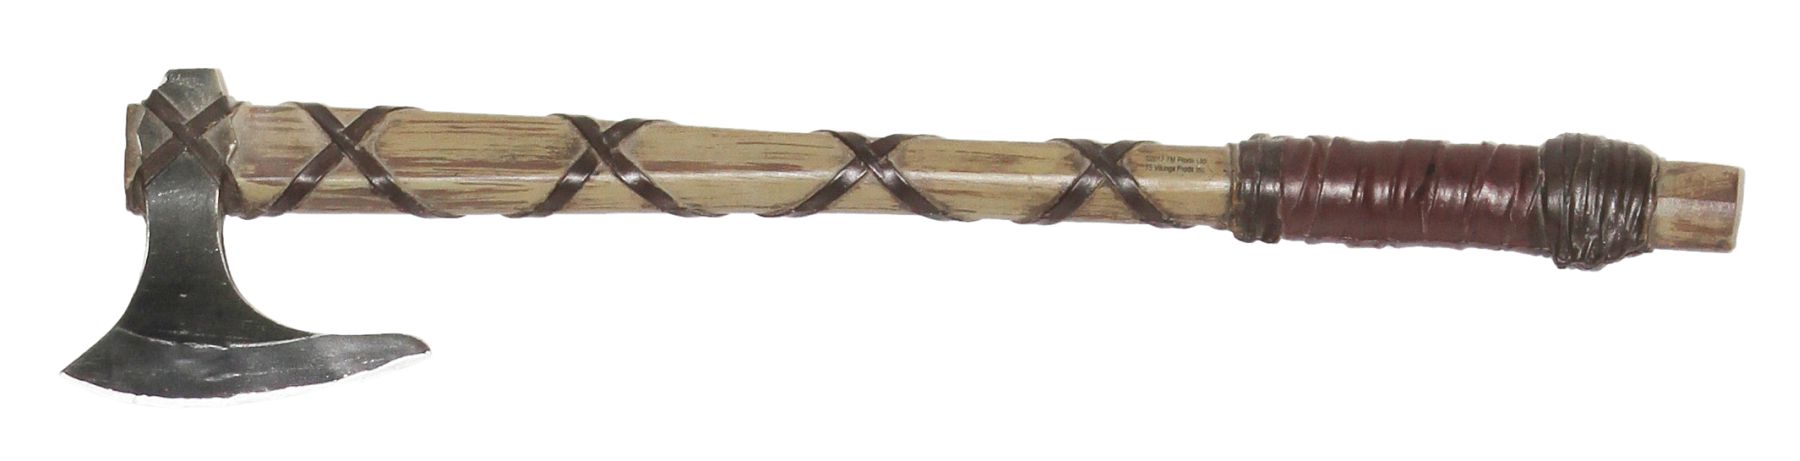 Viking ax